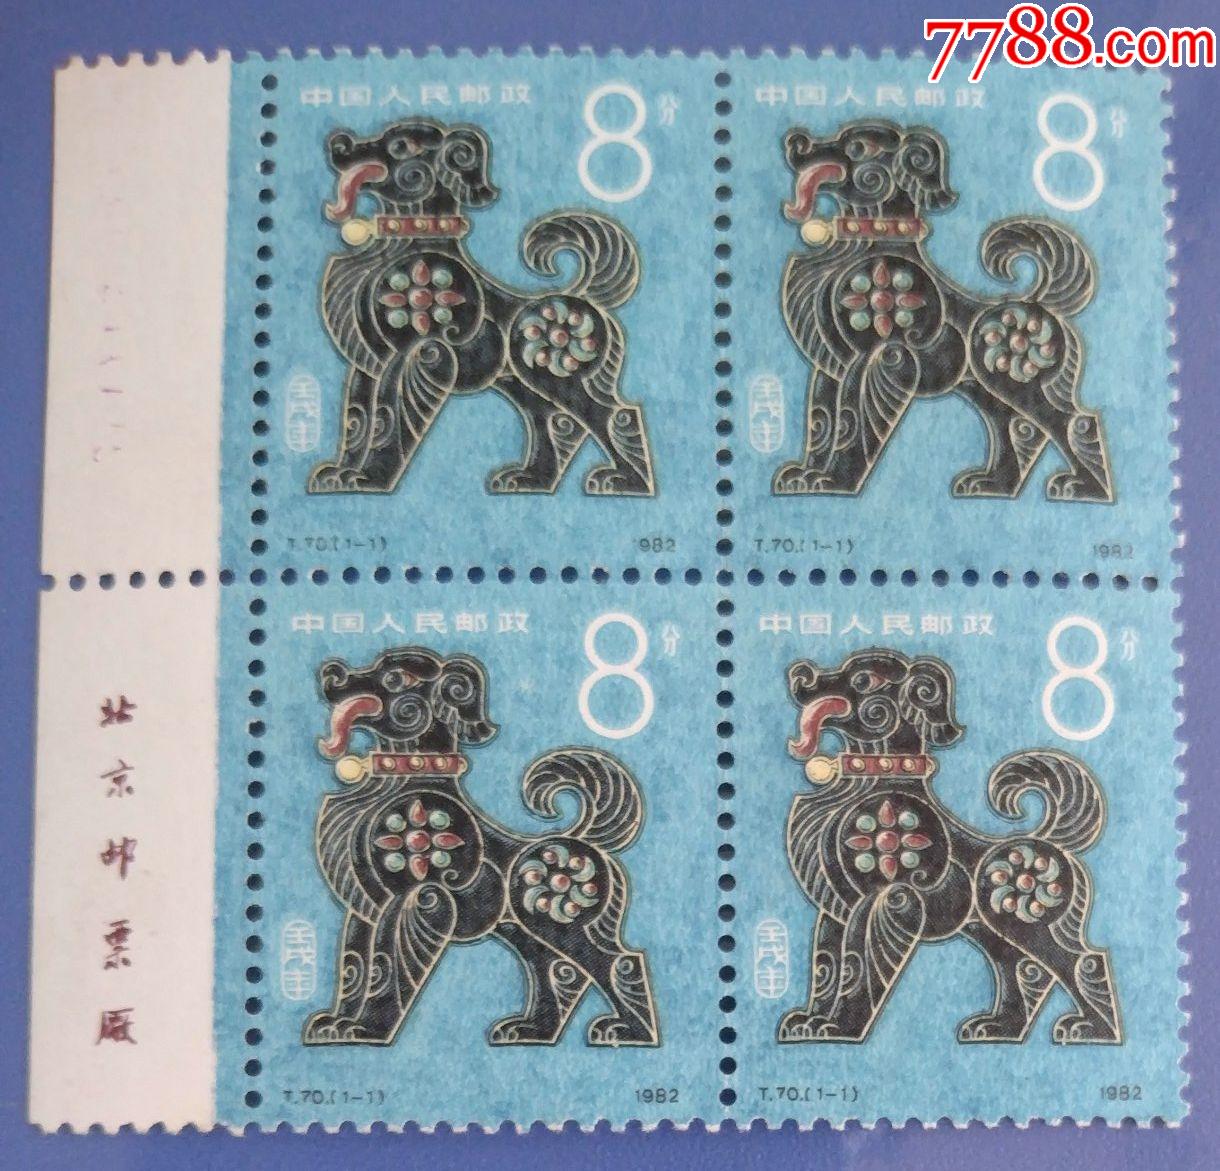 第一轮生肖邮票:t70壬戌(狗)年四方连(带厂铭)